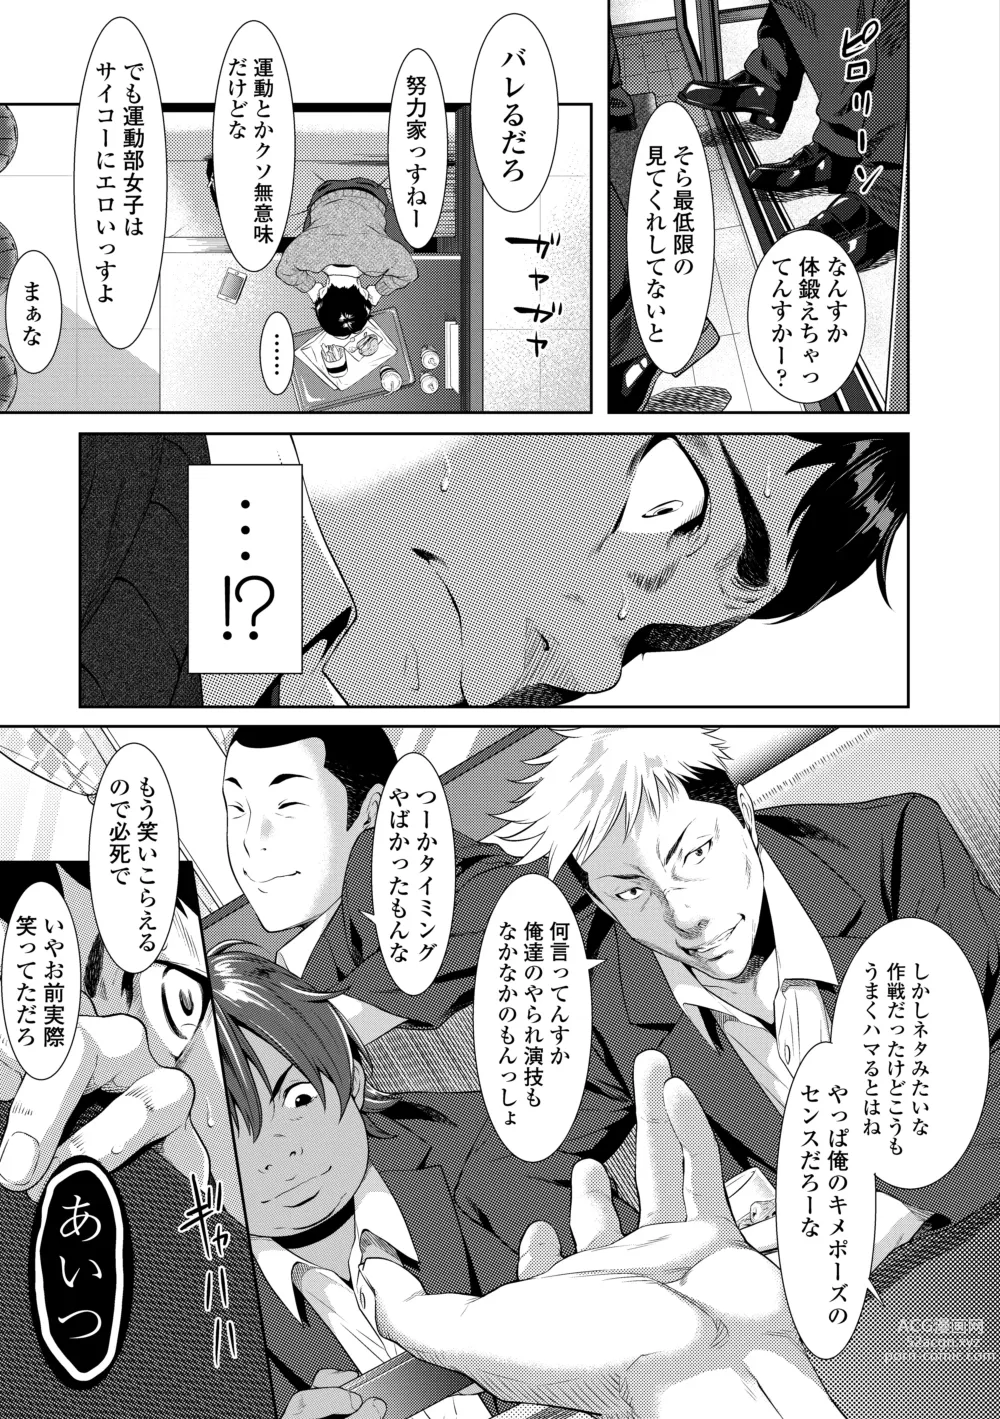 Page 15 of manga Tooi Kimi ni, Boku wa Todokanai - I cant reach you, far away.